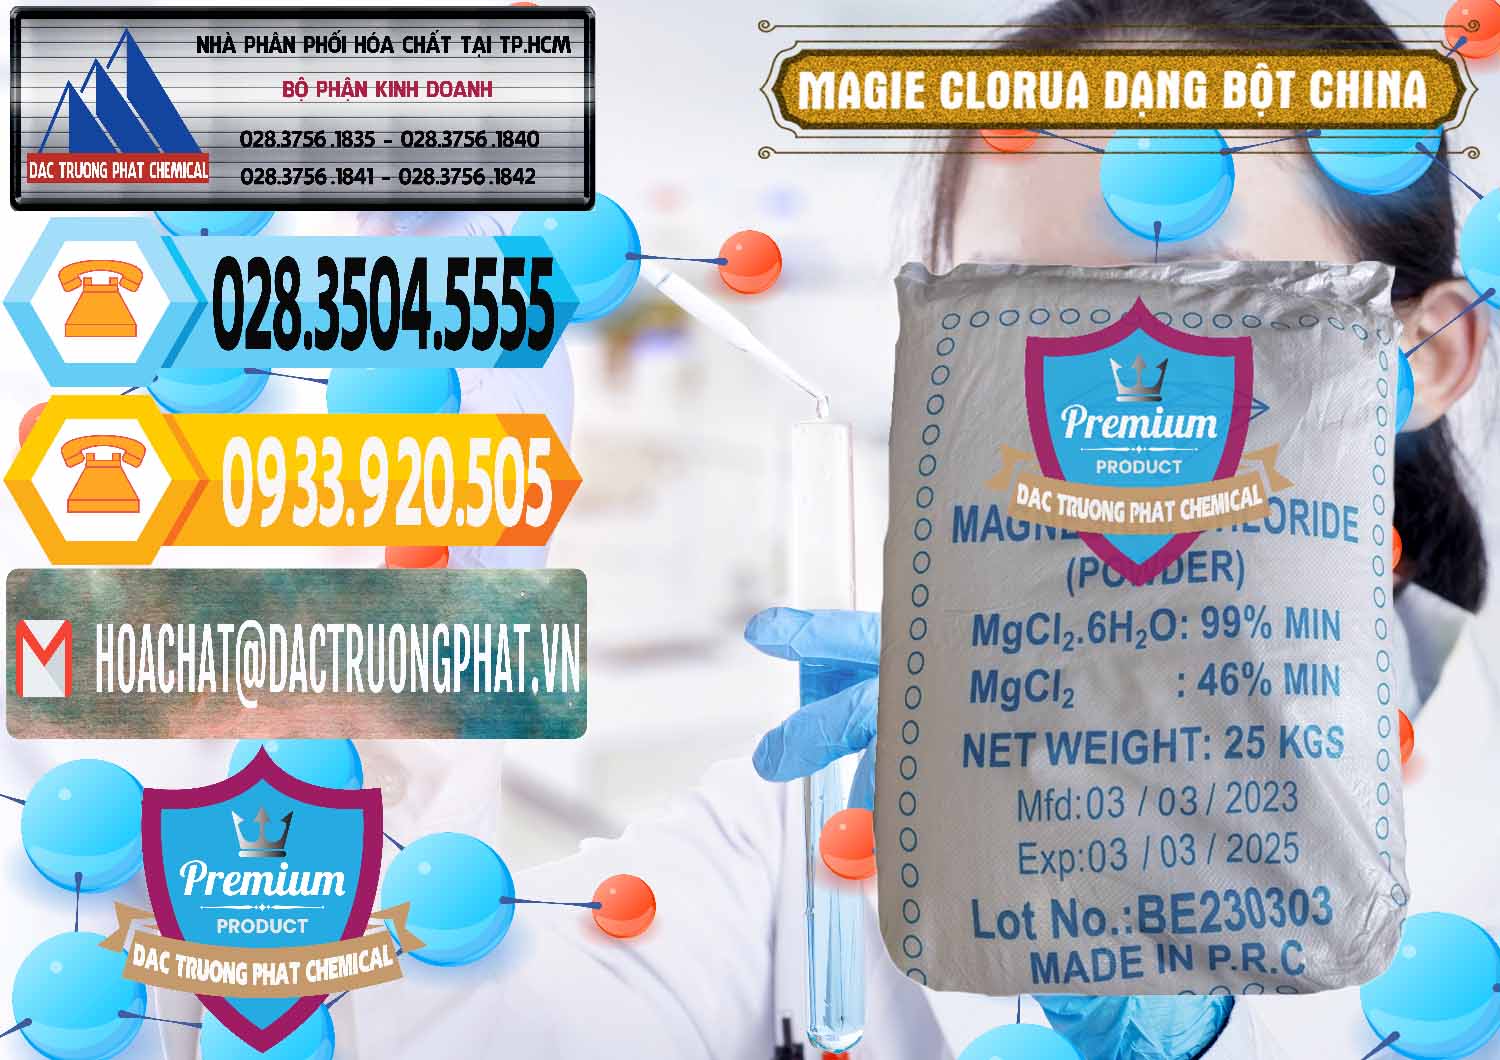 Cty chuyên bán & cung ứng Magie Clorua – MGCL2 96% Dạng Bột Logo Kim Cương Trung Quốc China - 0387 - Đơn vị chuyên cung cấp ( nhập khẩu ) hóa chất tại TP.HCM - hoachattayrua.net